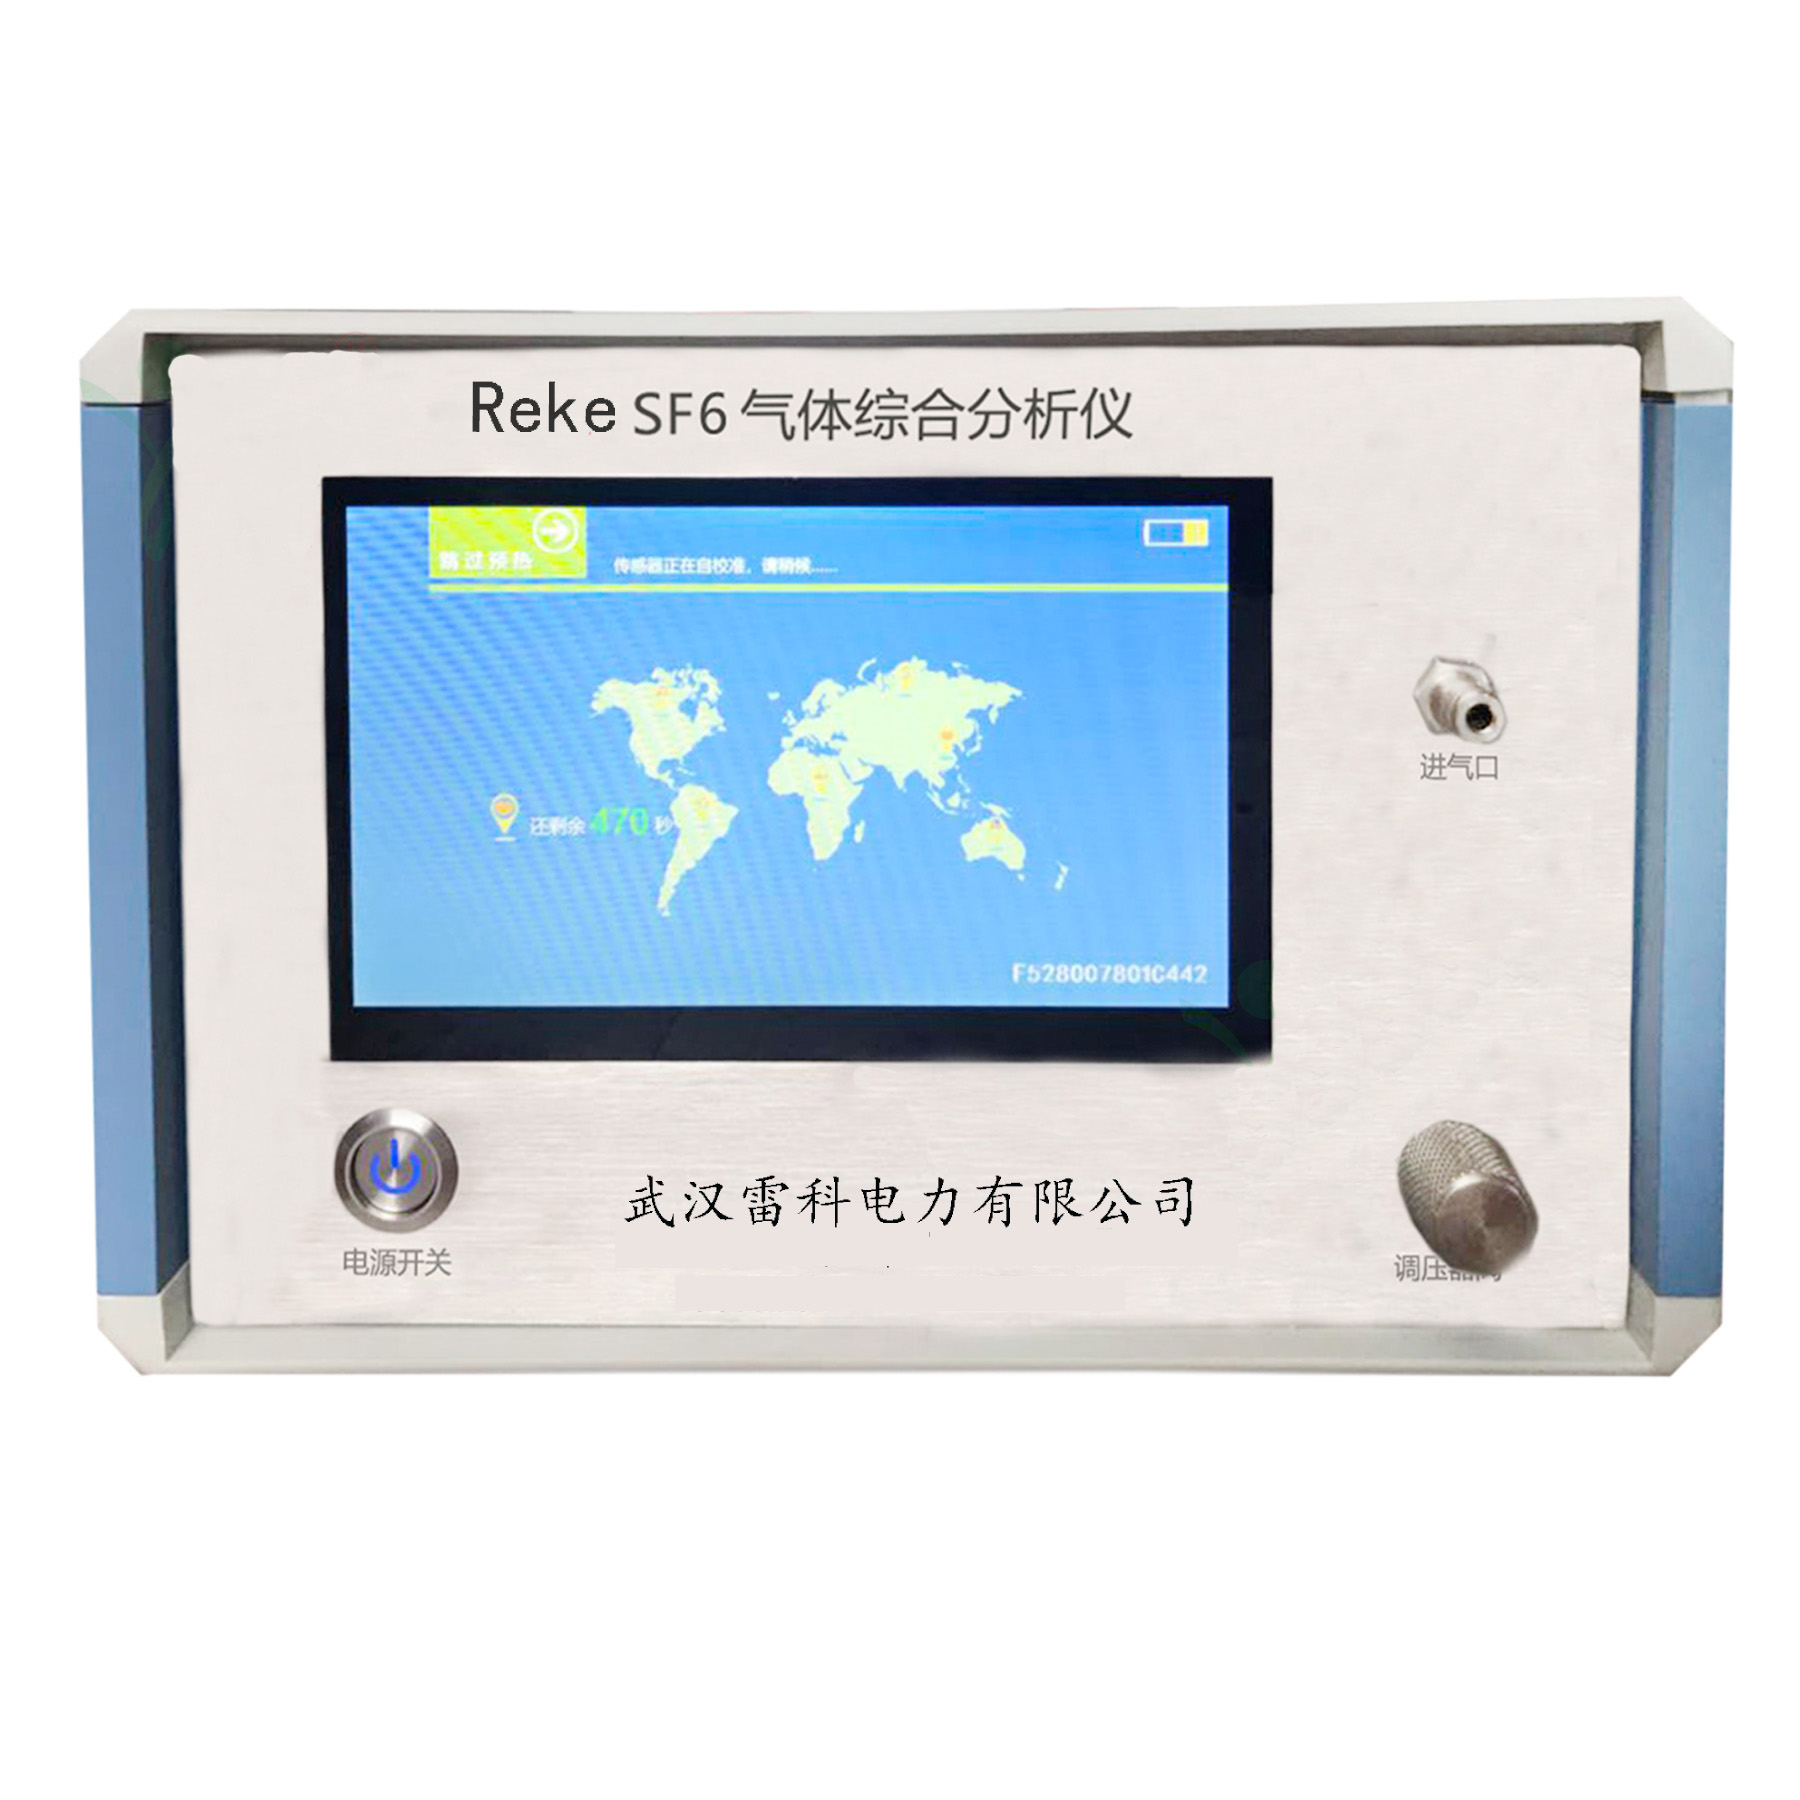 Reke-IISF6气体综合分析仪